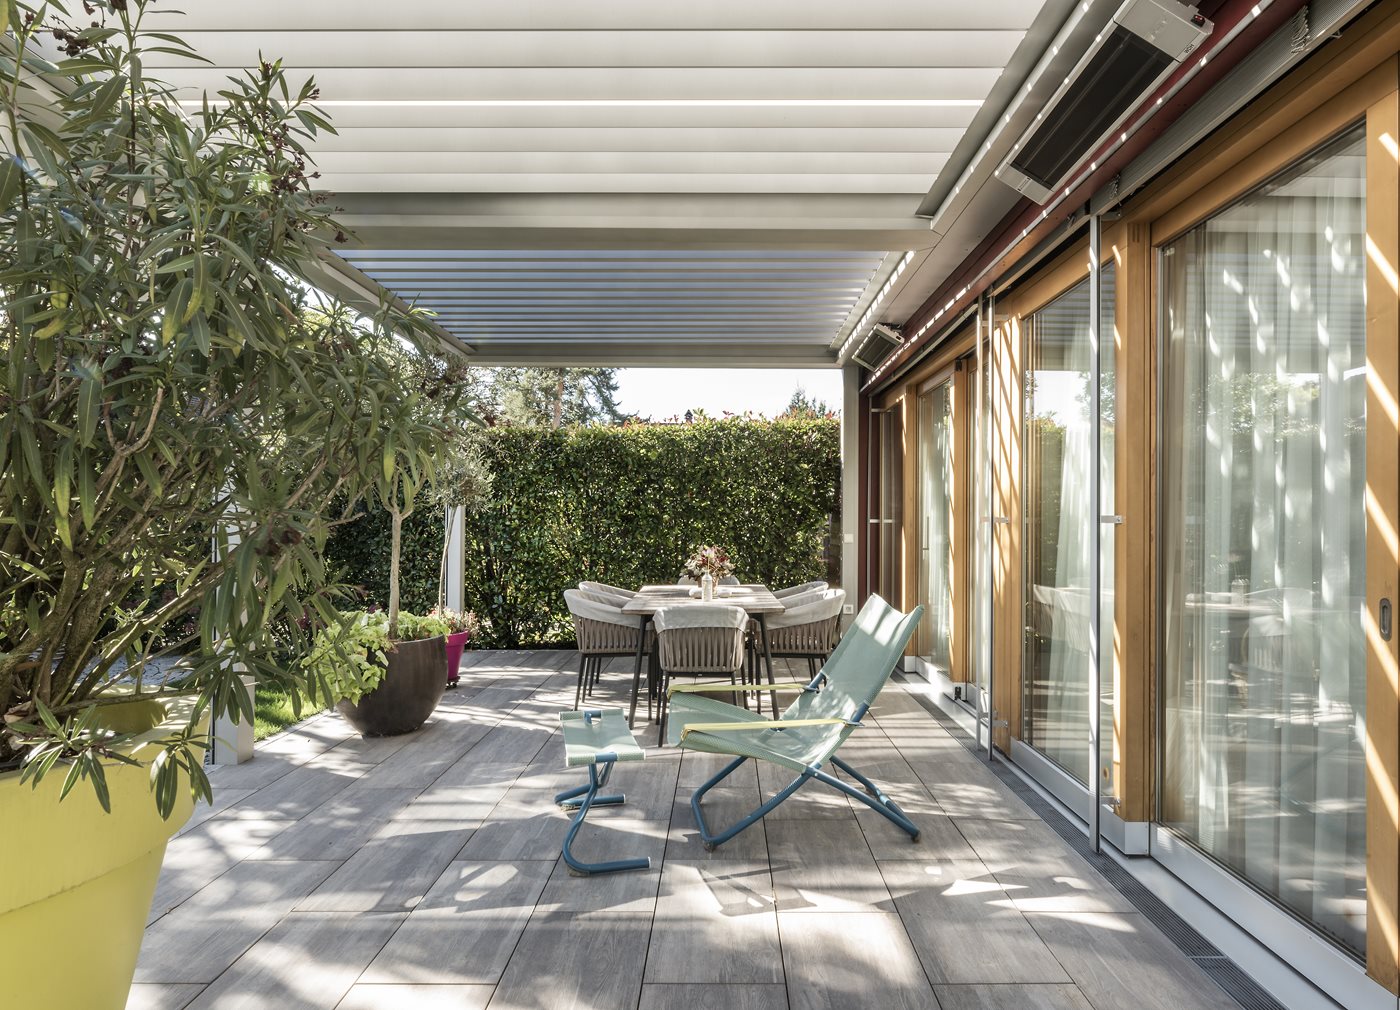 Tuinen, veranda’s en balkons: outdoor living, thuis.